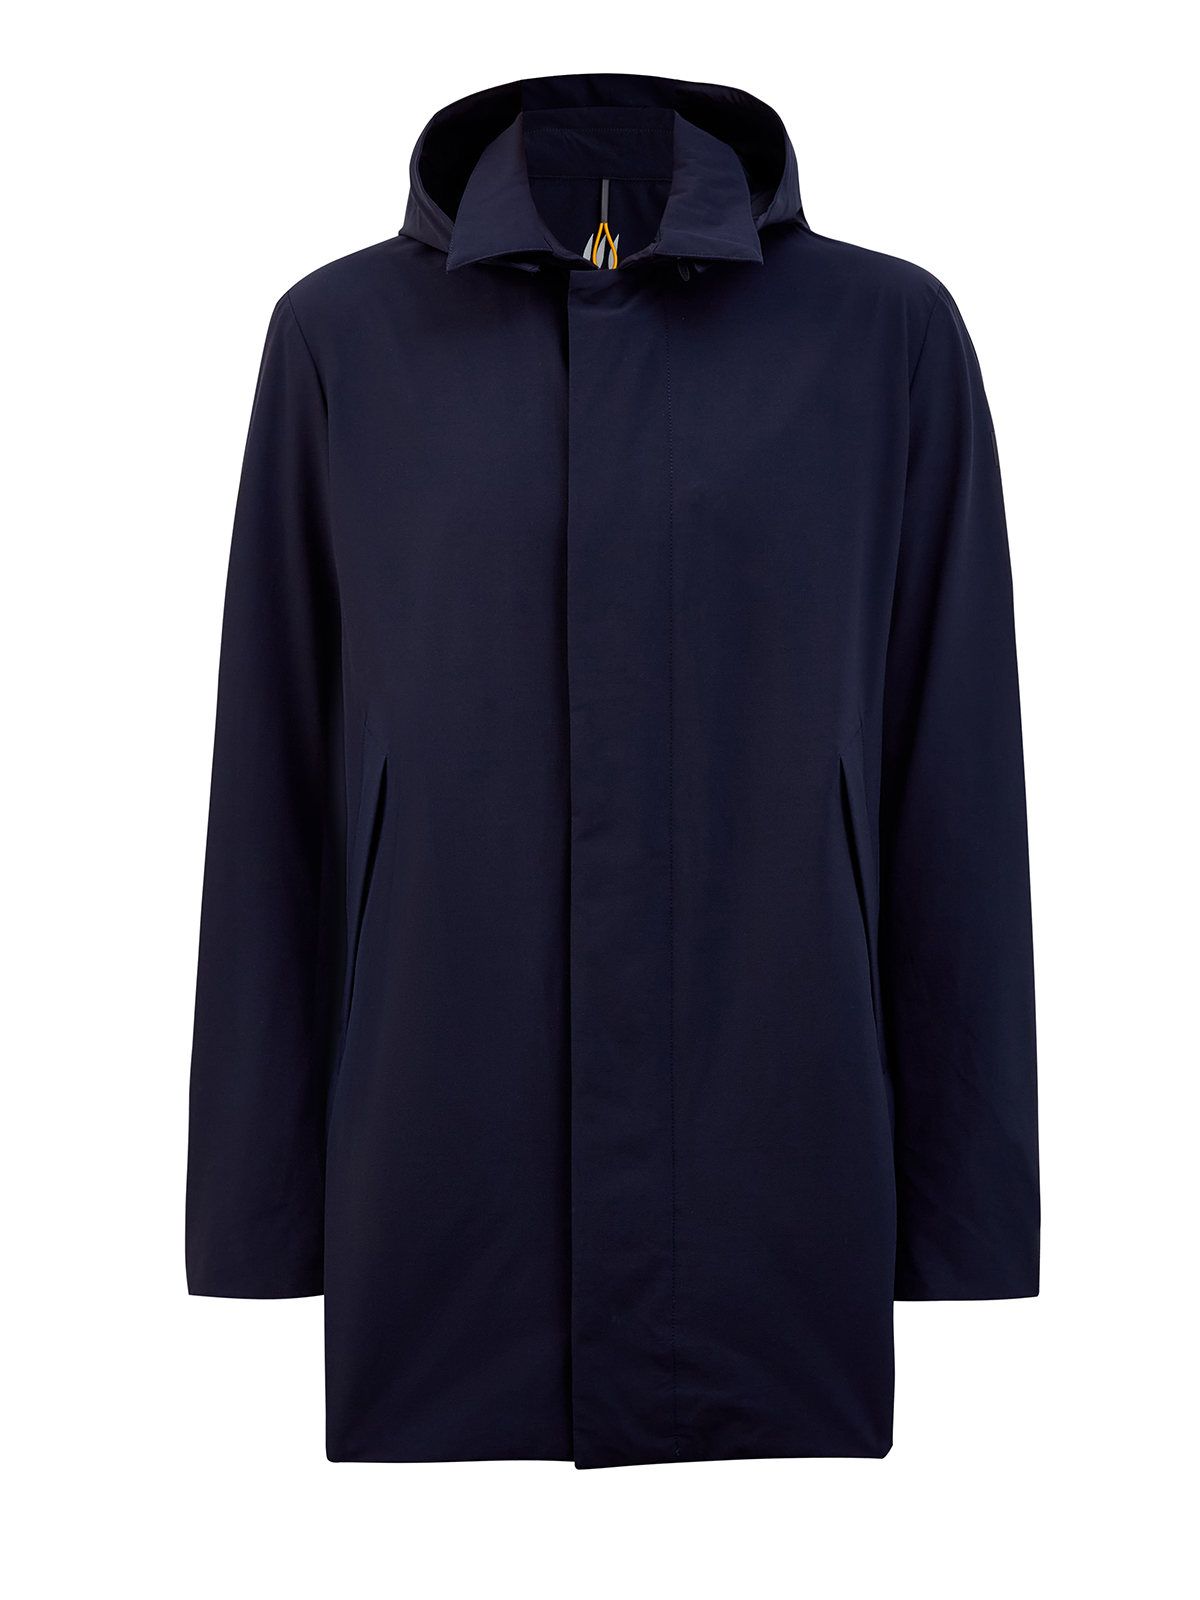 Куртка с классическим отложным воротом и съемным капюшоном на молнии HETREGO, цвет синий, размер L;XL;2XL;3XL;4XL;5XL - фото 1